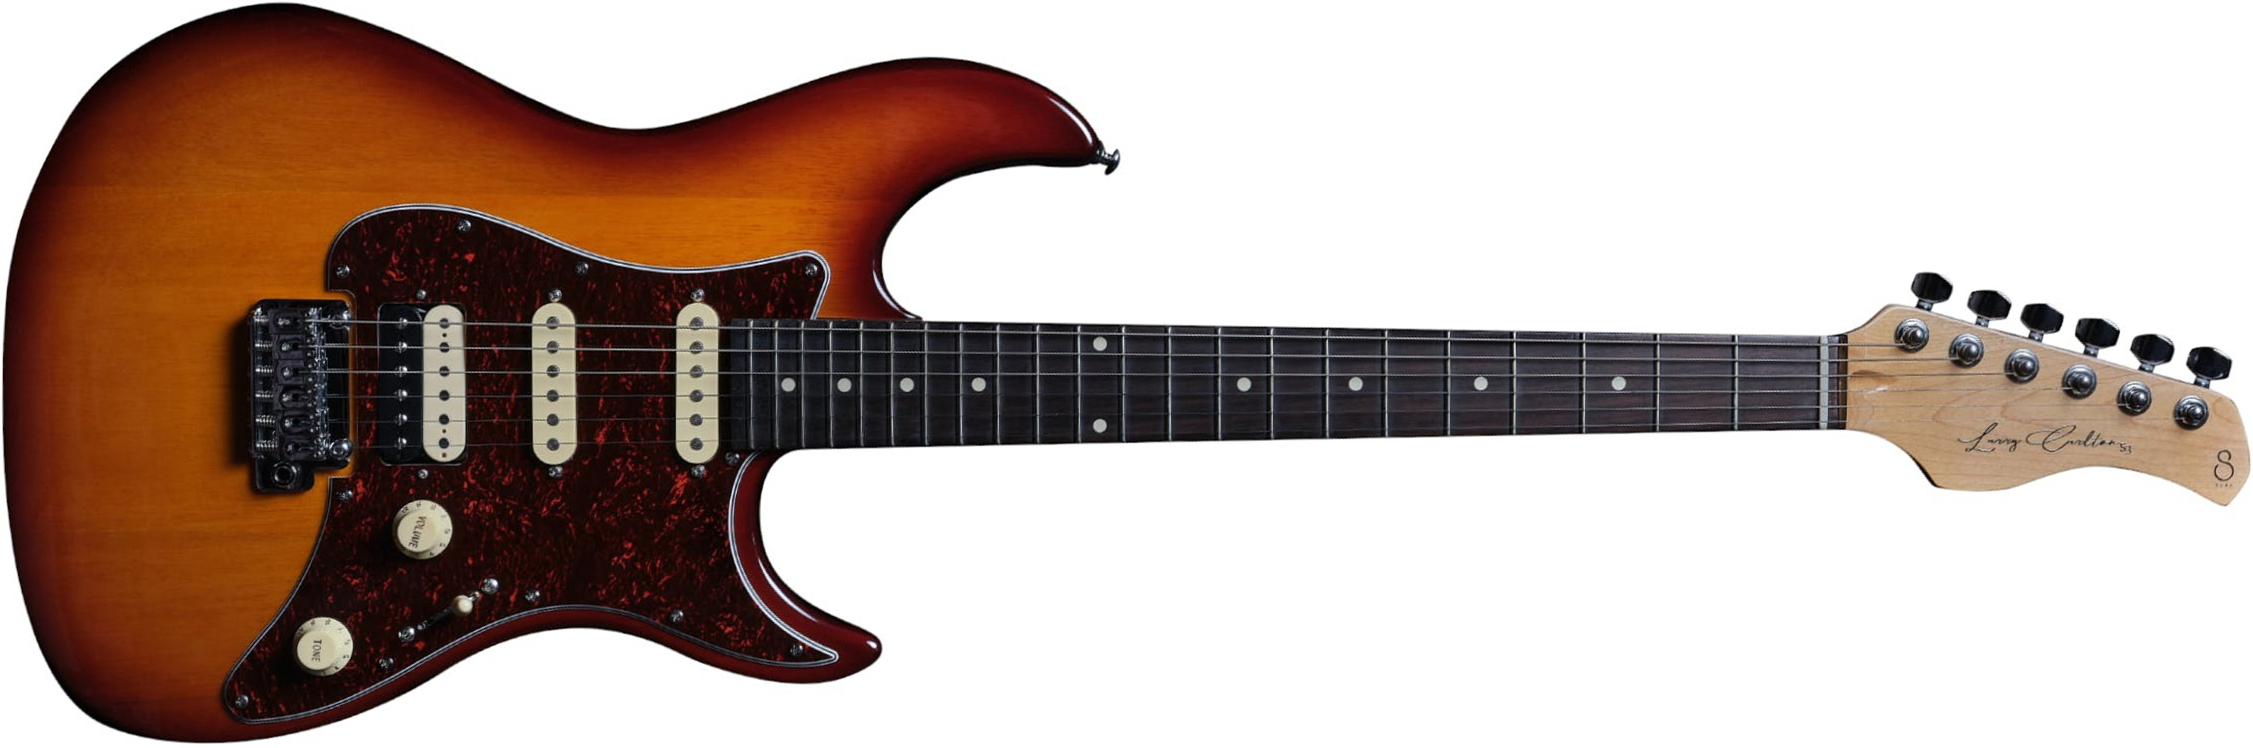 Sire Larry Carlton S3 Signature Hss Trem Rw - Tobacco Sunburst - Elektrische gitaar in Str-vorm - Main picture